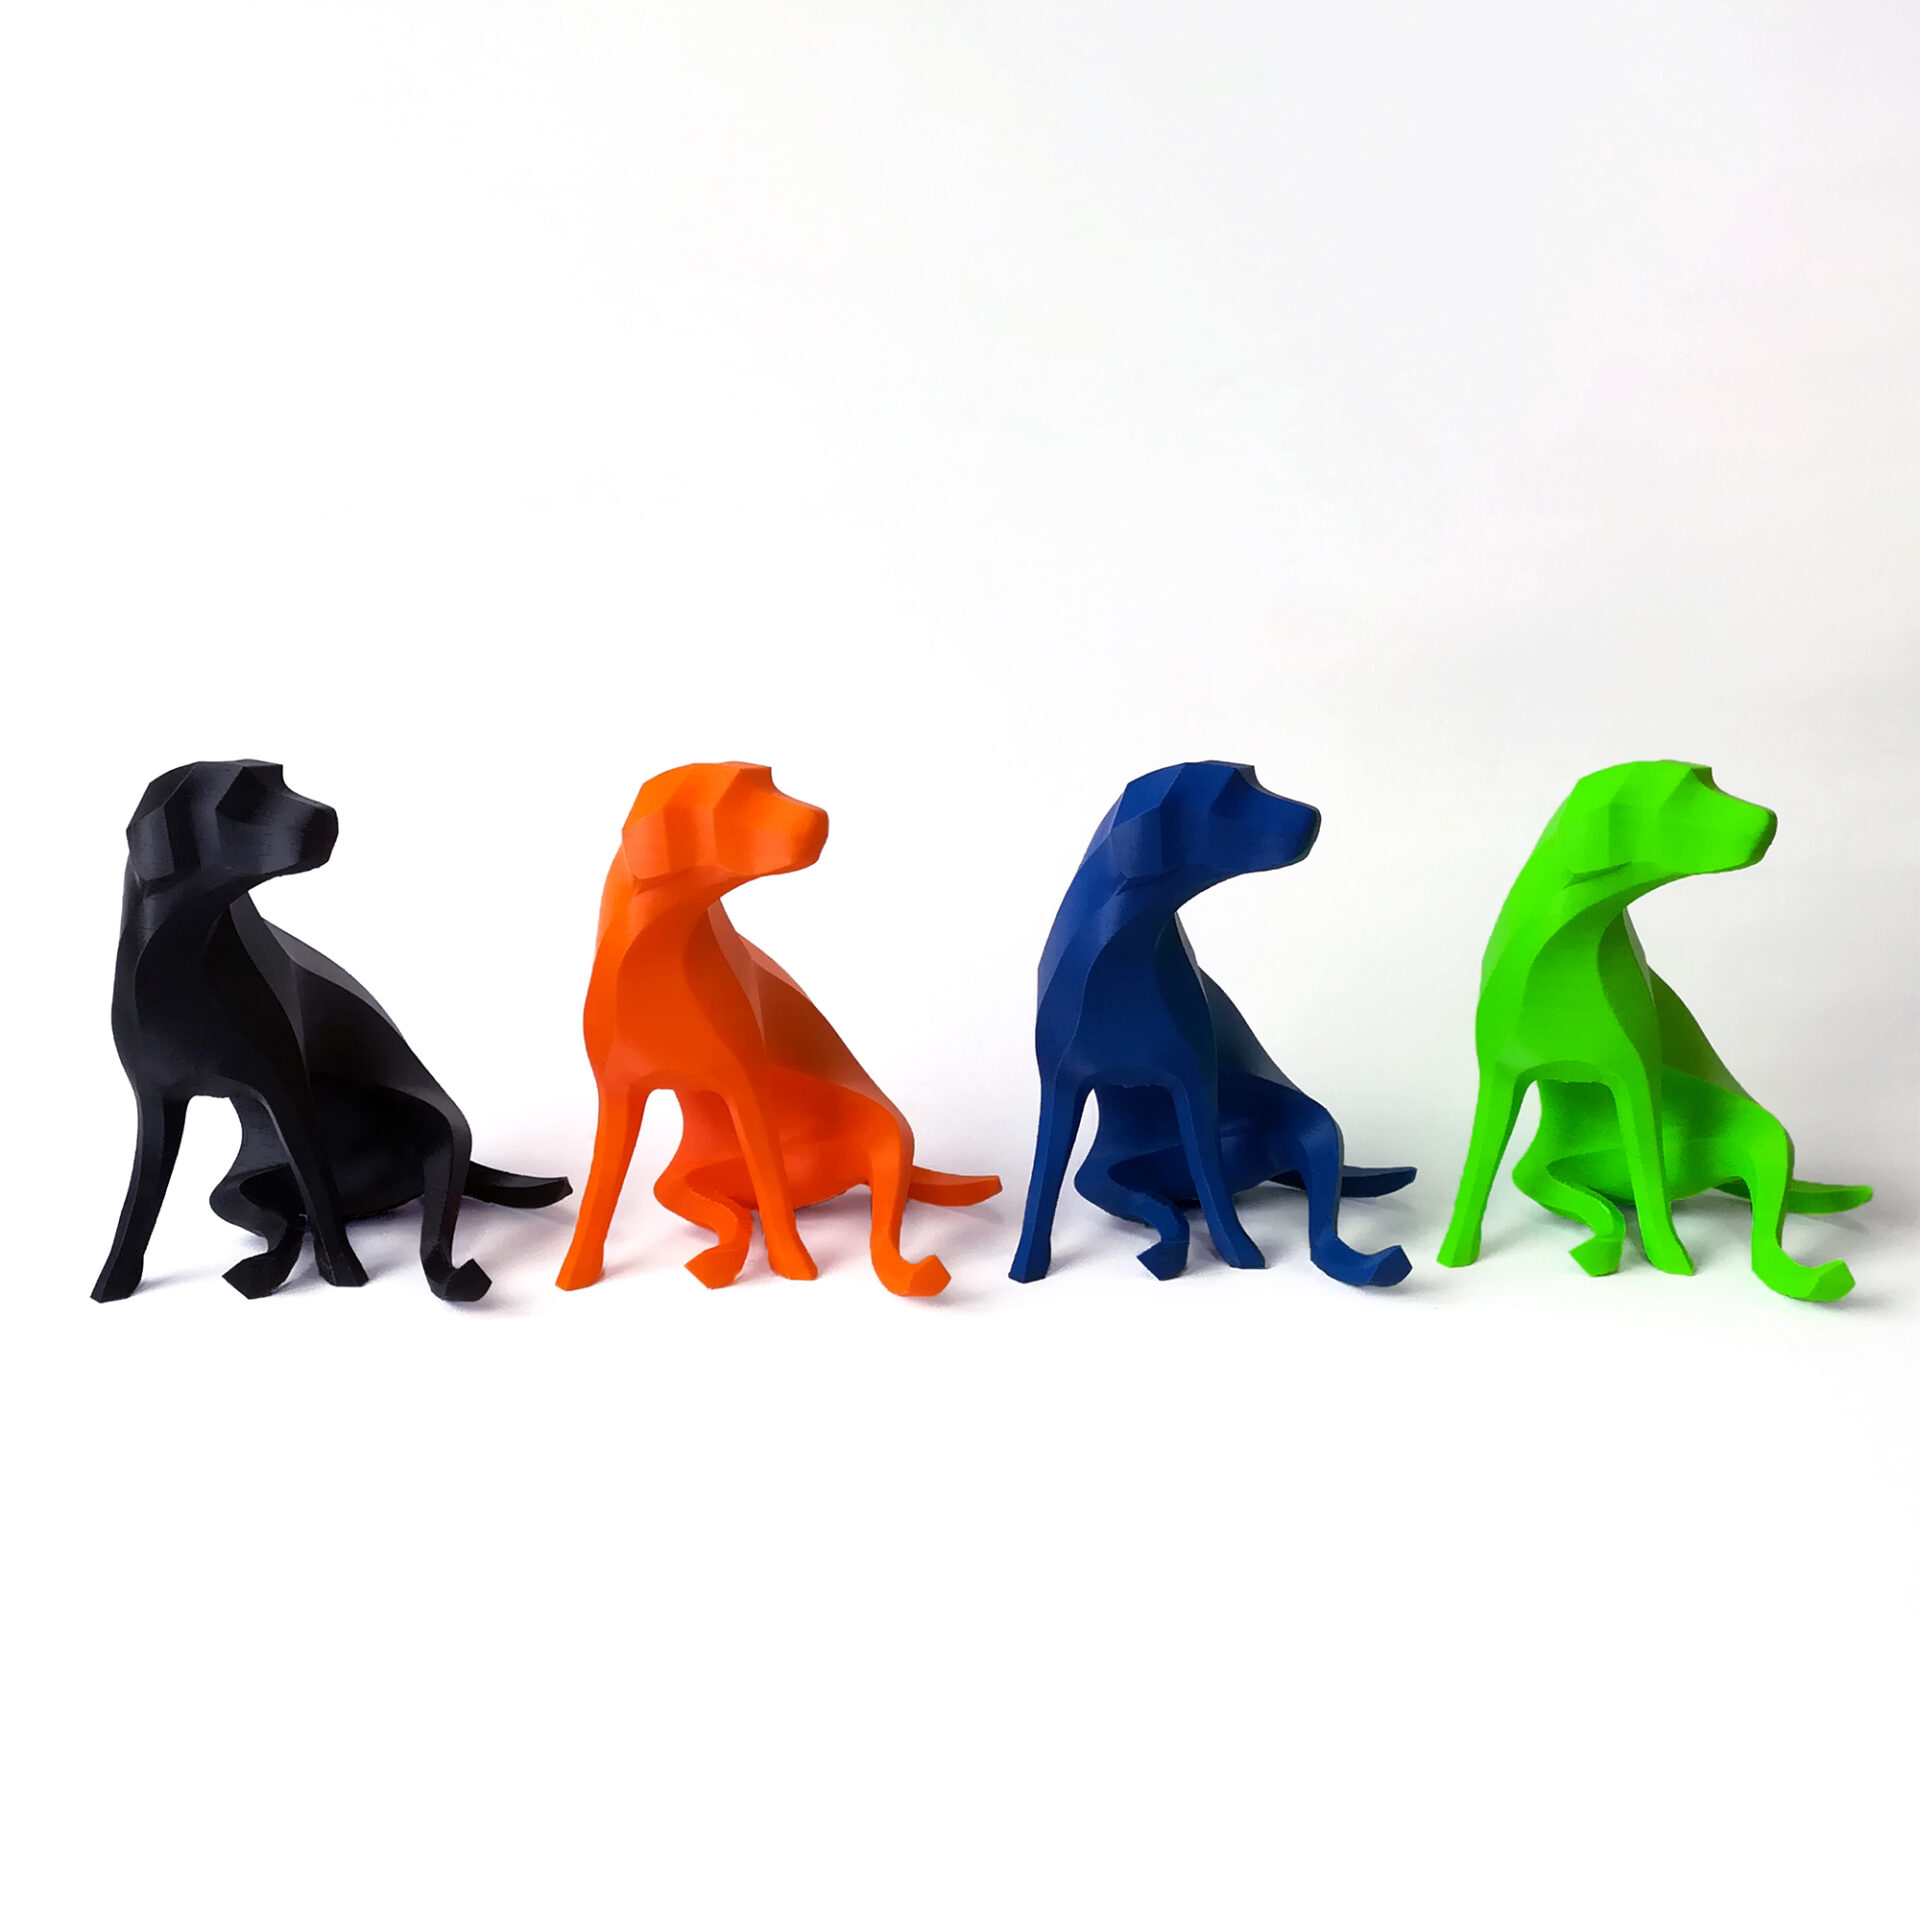 彫刻家 萩原亮の3D printing works、カラフルな犬のアート作品の画像